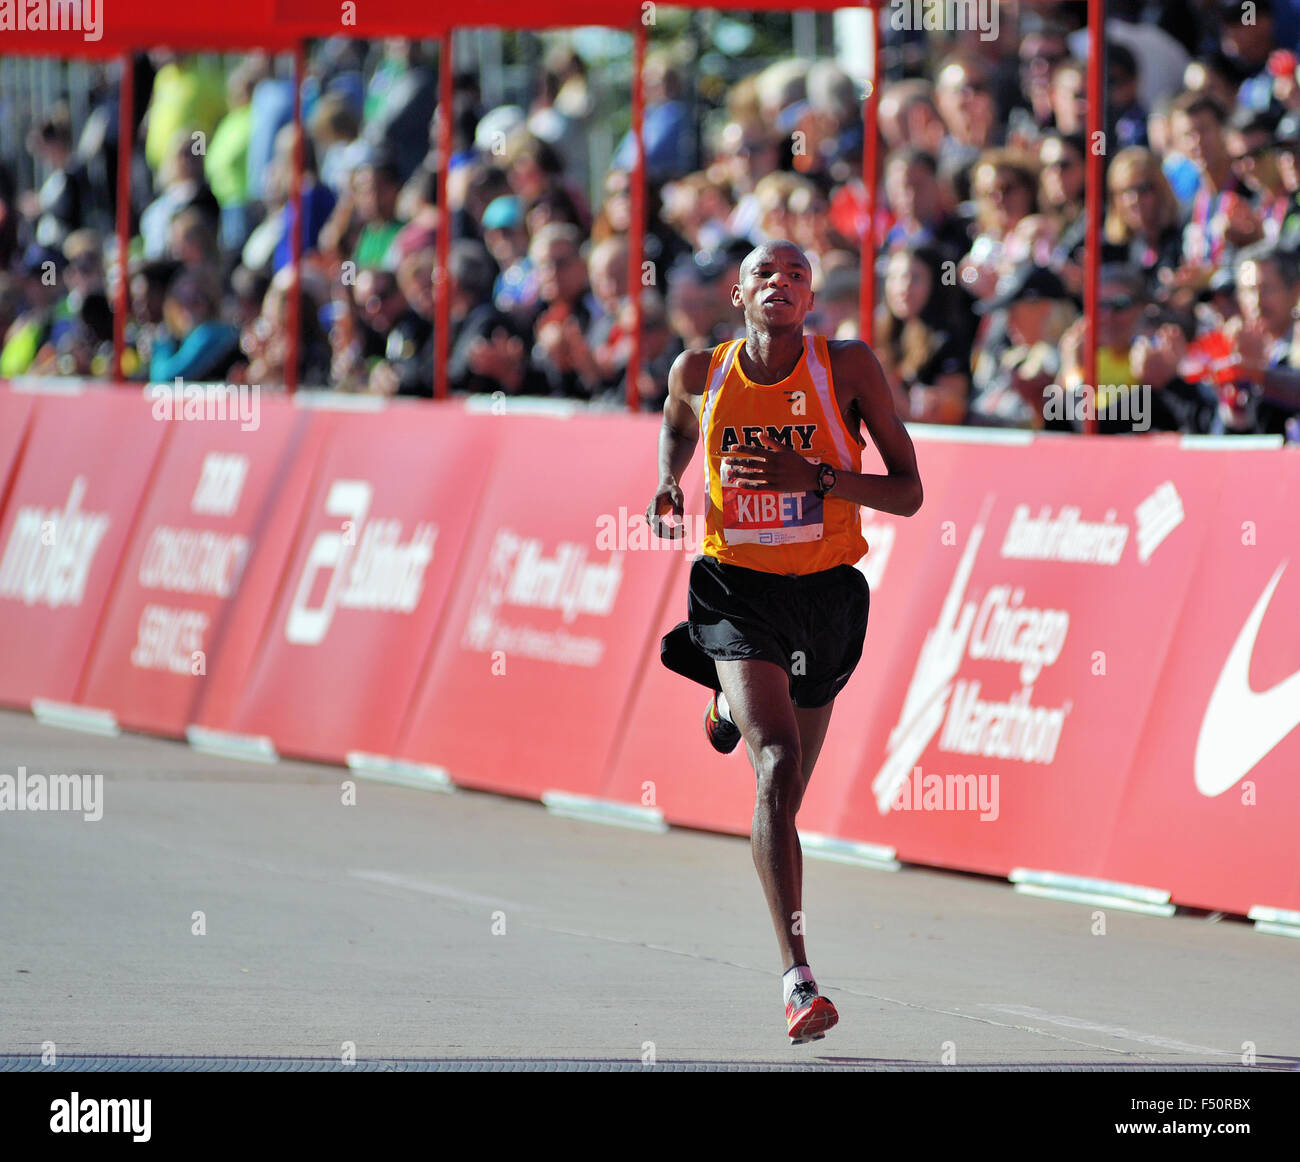 Elkanah Kibet degli Stati Uniti si avvicina al traguardo del 2015 Maratona di Chicago. Chicago, Illinois, Stati Uniti d'America. Foto Stock